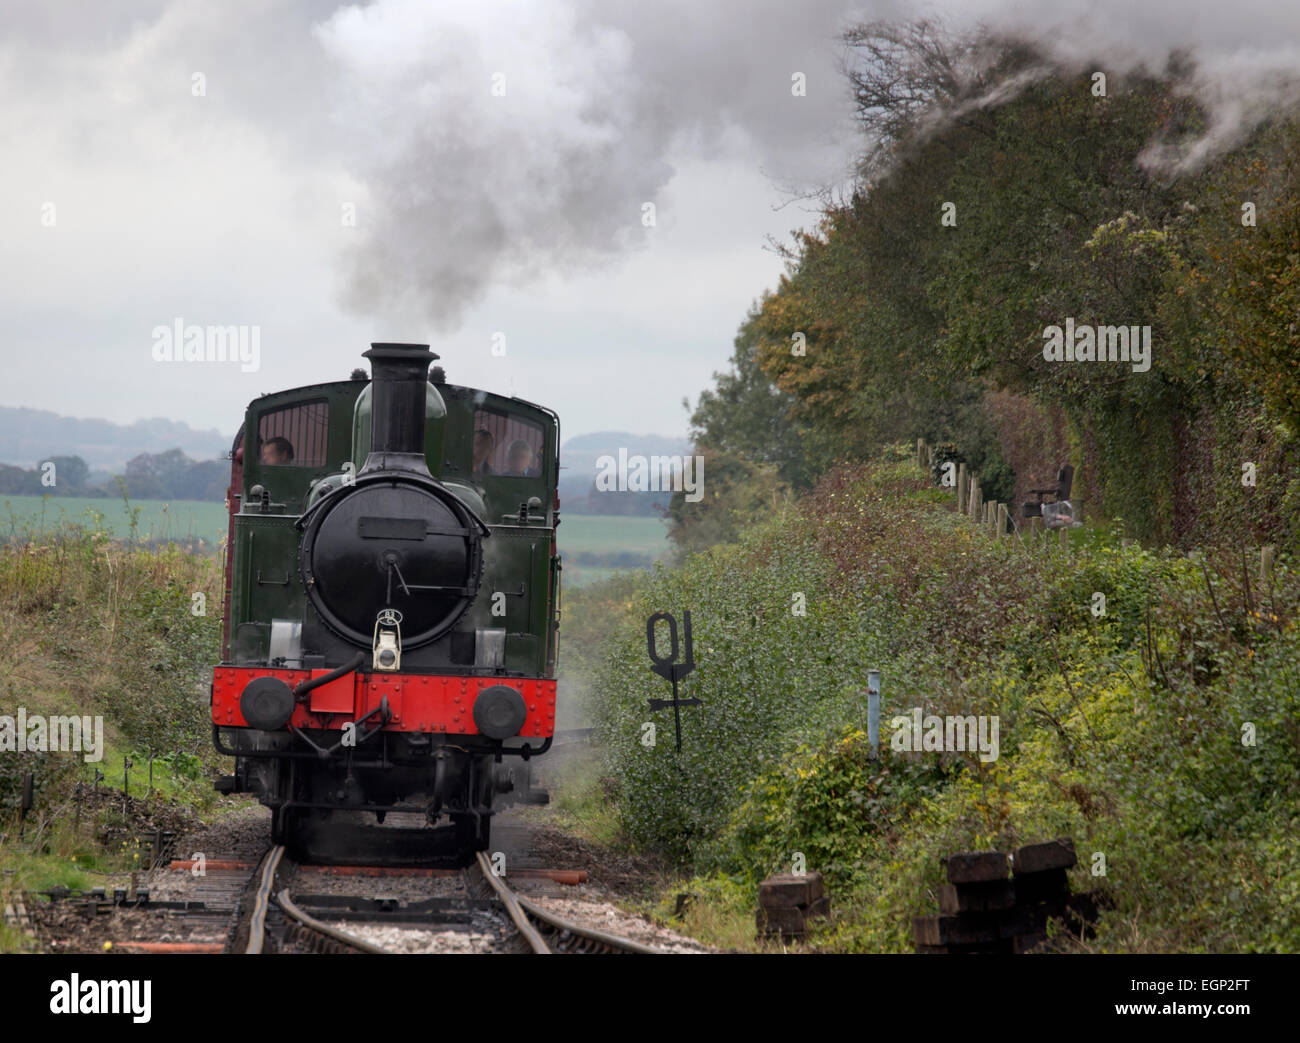 La locomotive à vapeur 1450 approchant Ropley Station sur le milieu Hants Railway (Cresson) Ligne Hampshire, England, UK. Banque D'Images